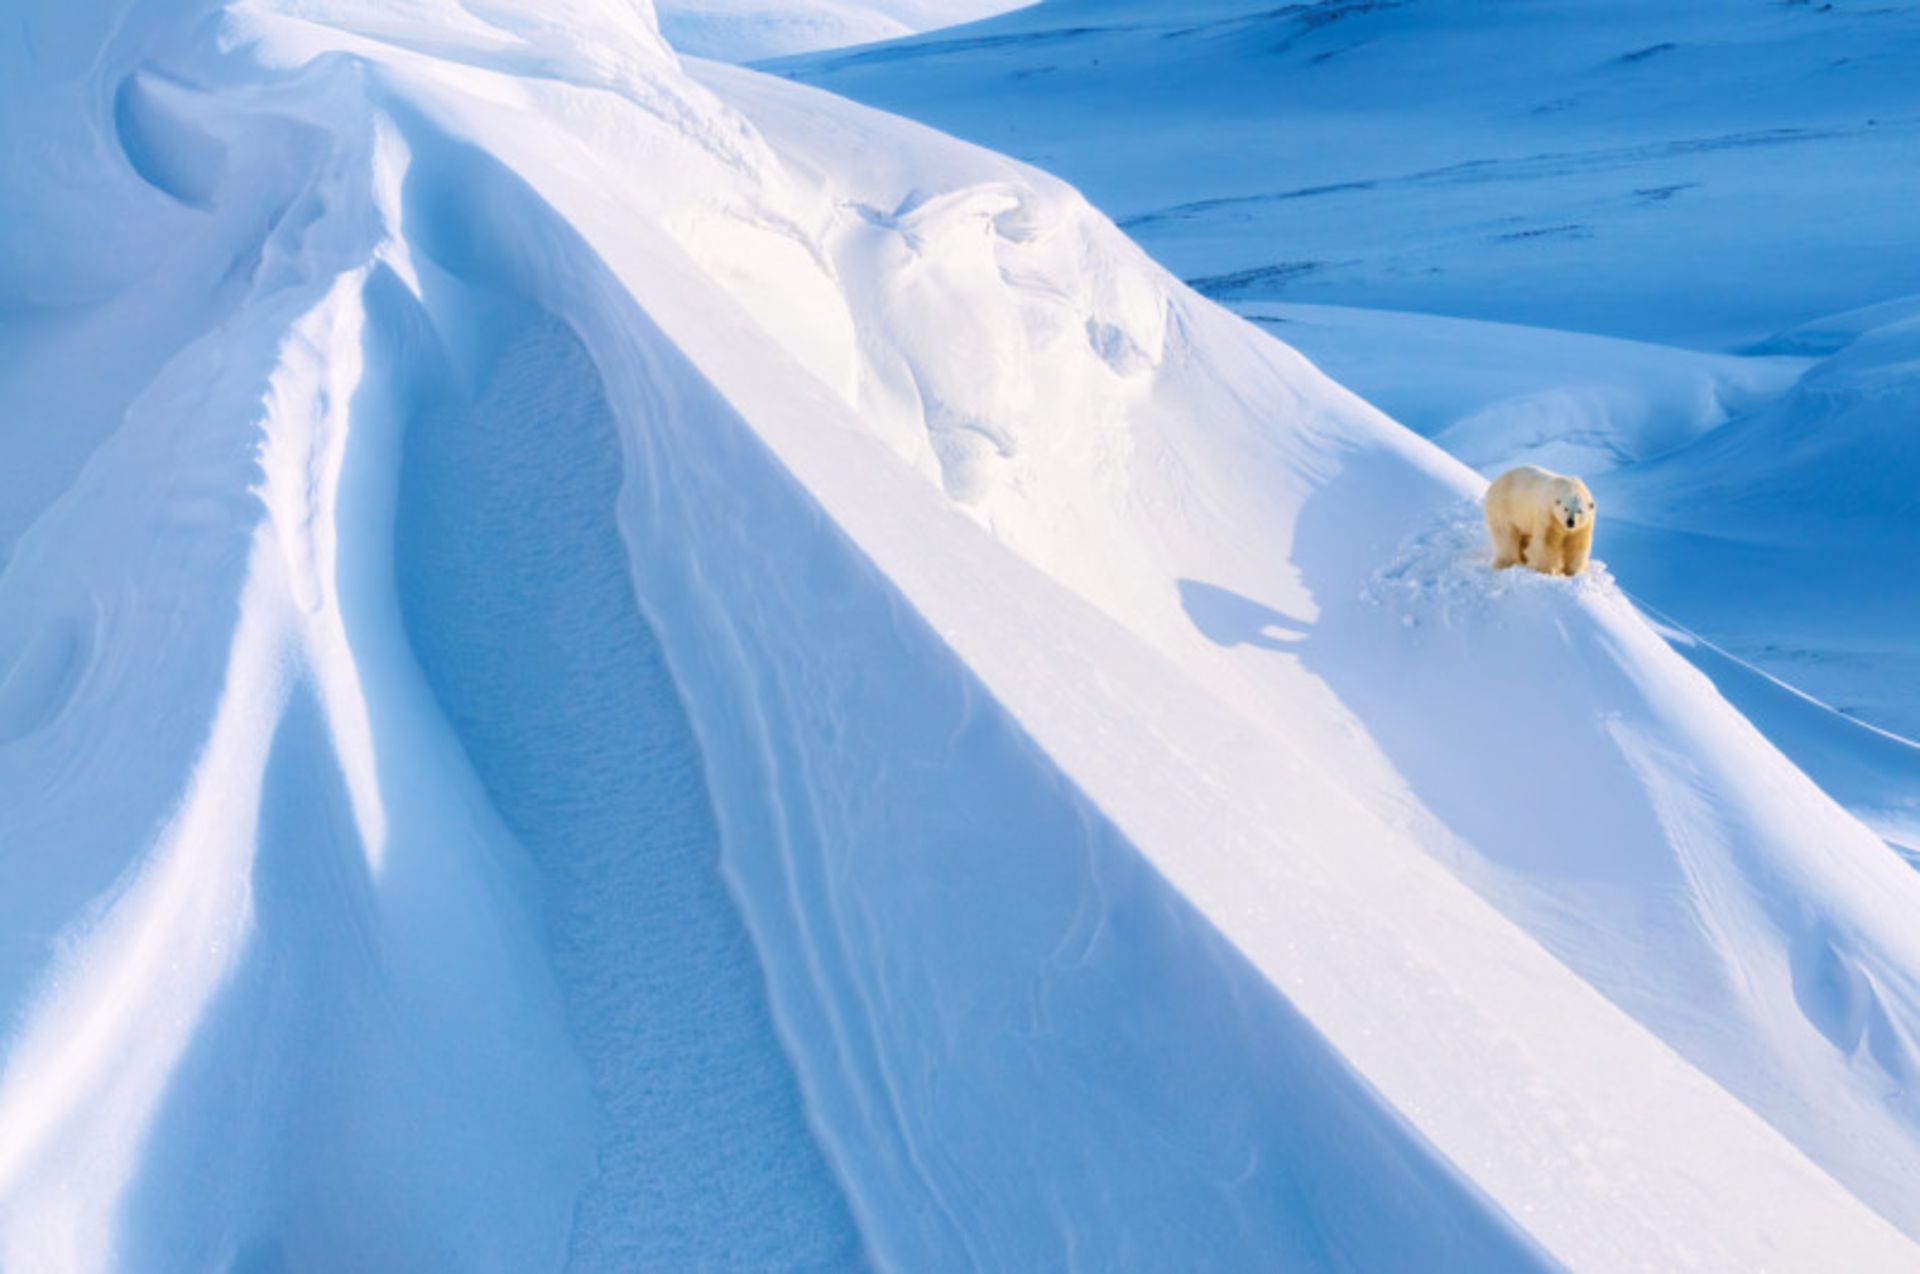  خرس قطبی در میان برف در  قطب شمال